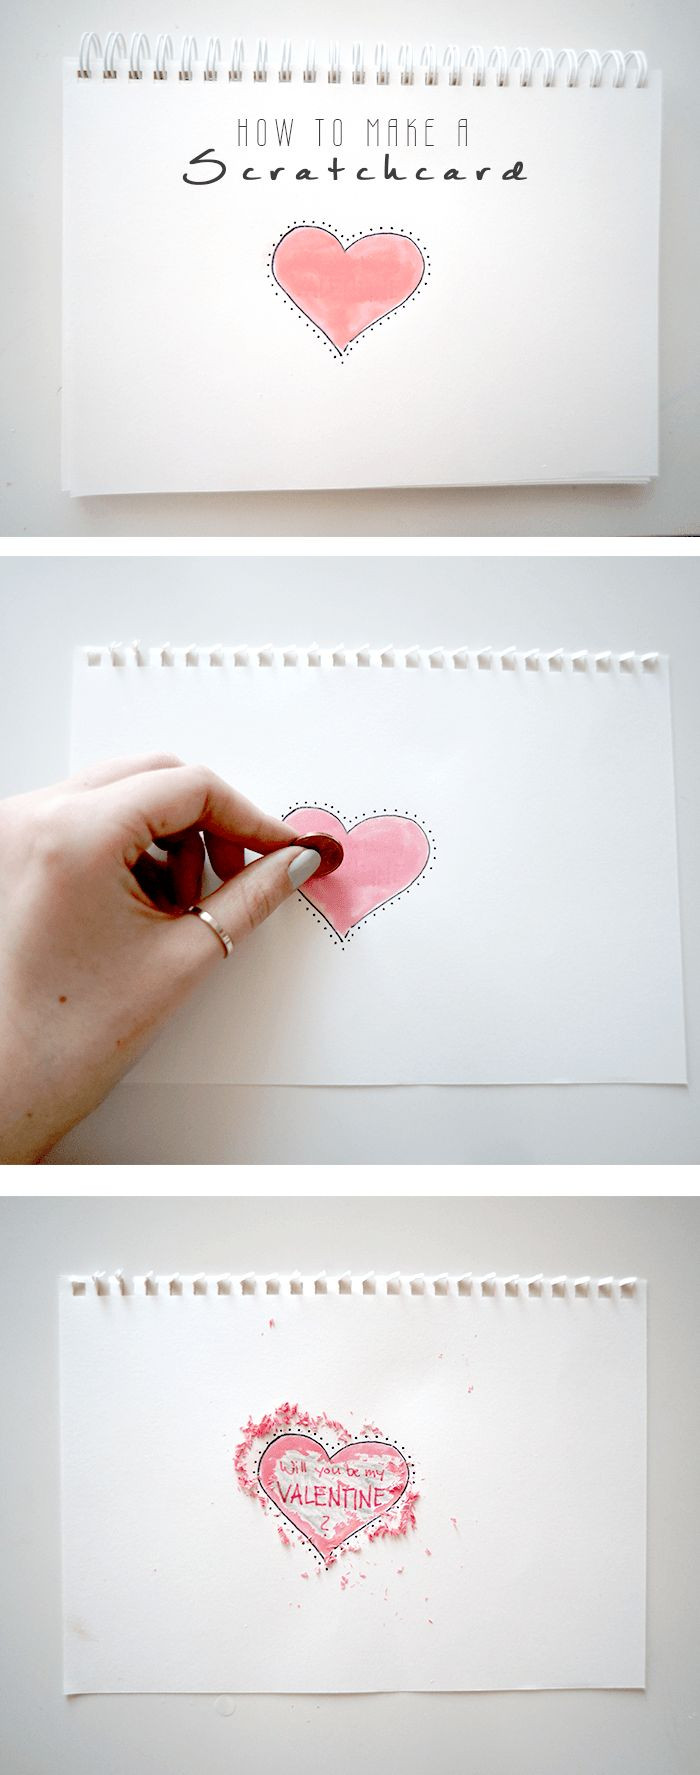 Jahrestag Geschenk Für Ihn Diy
 Scratchcard DIY Valentinstag Rubbellos